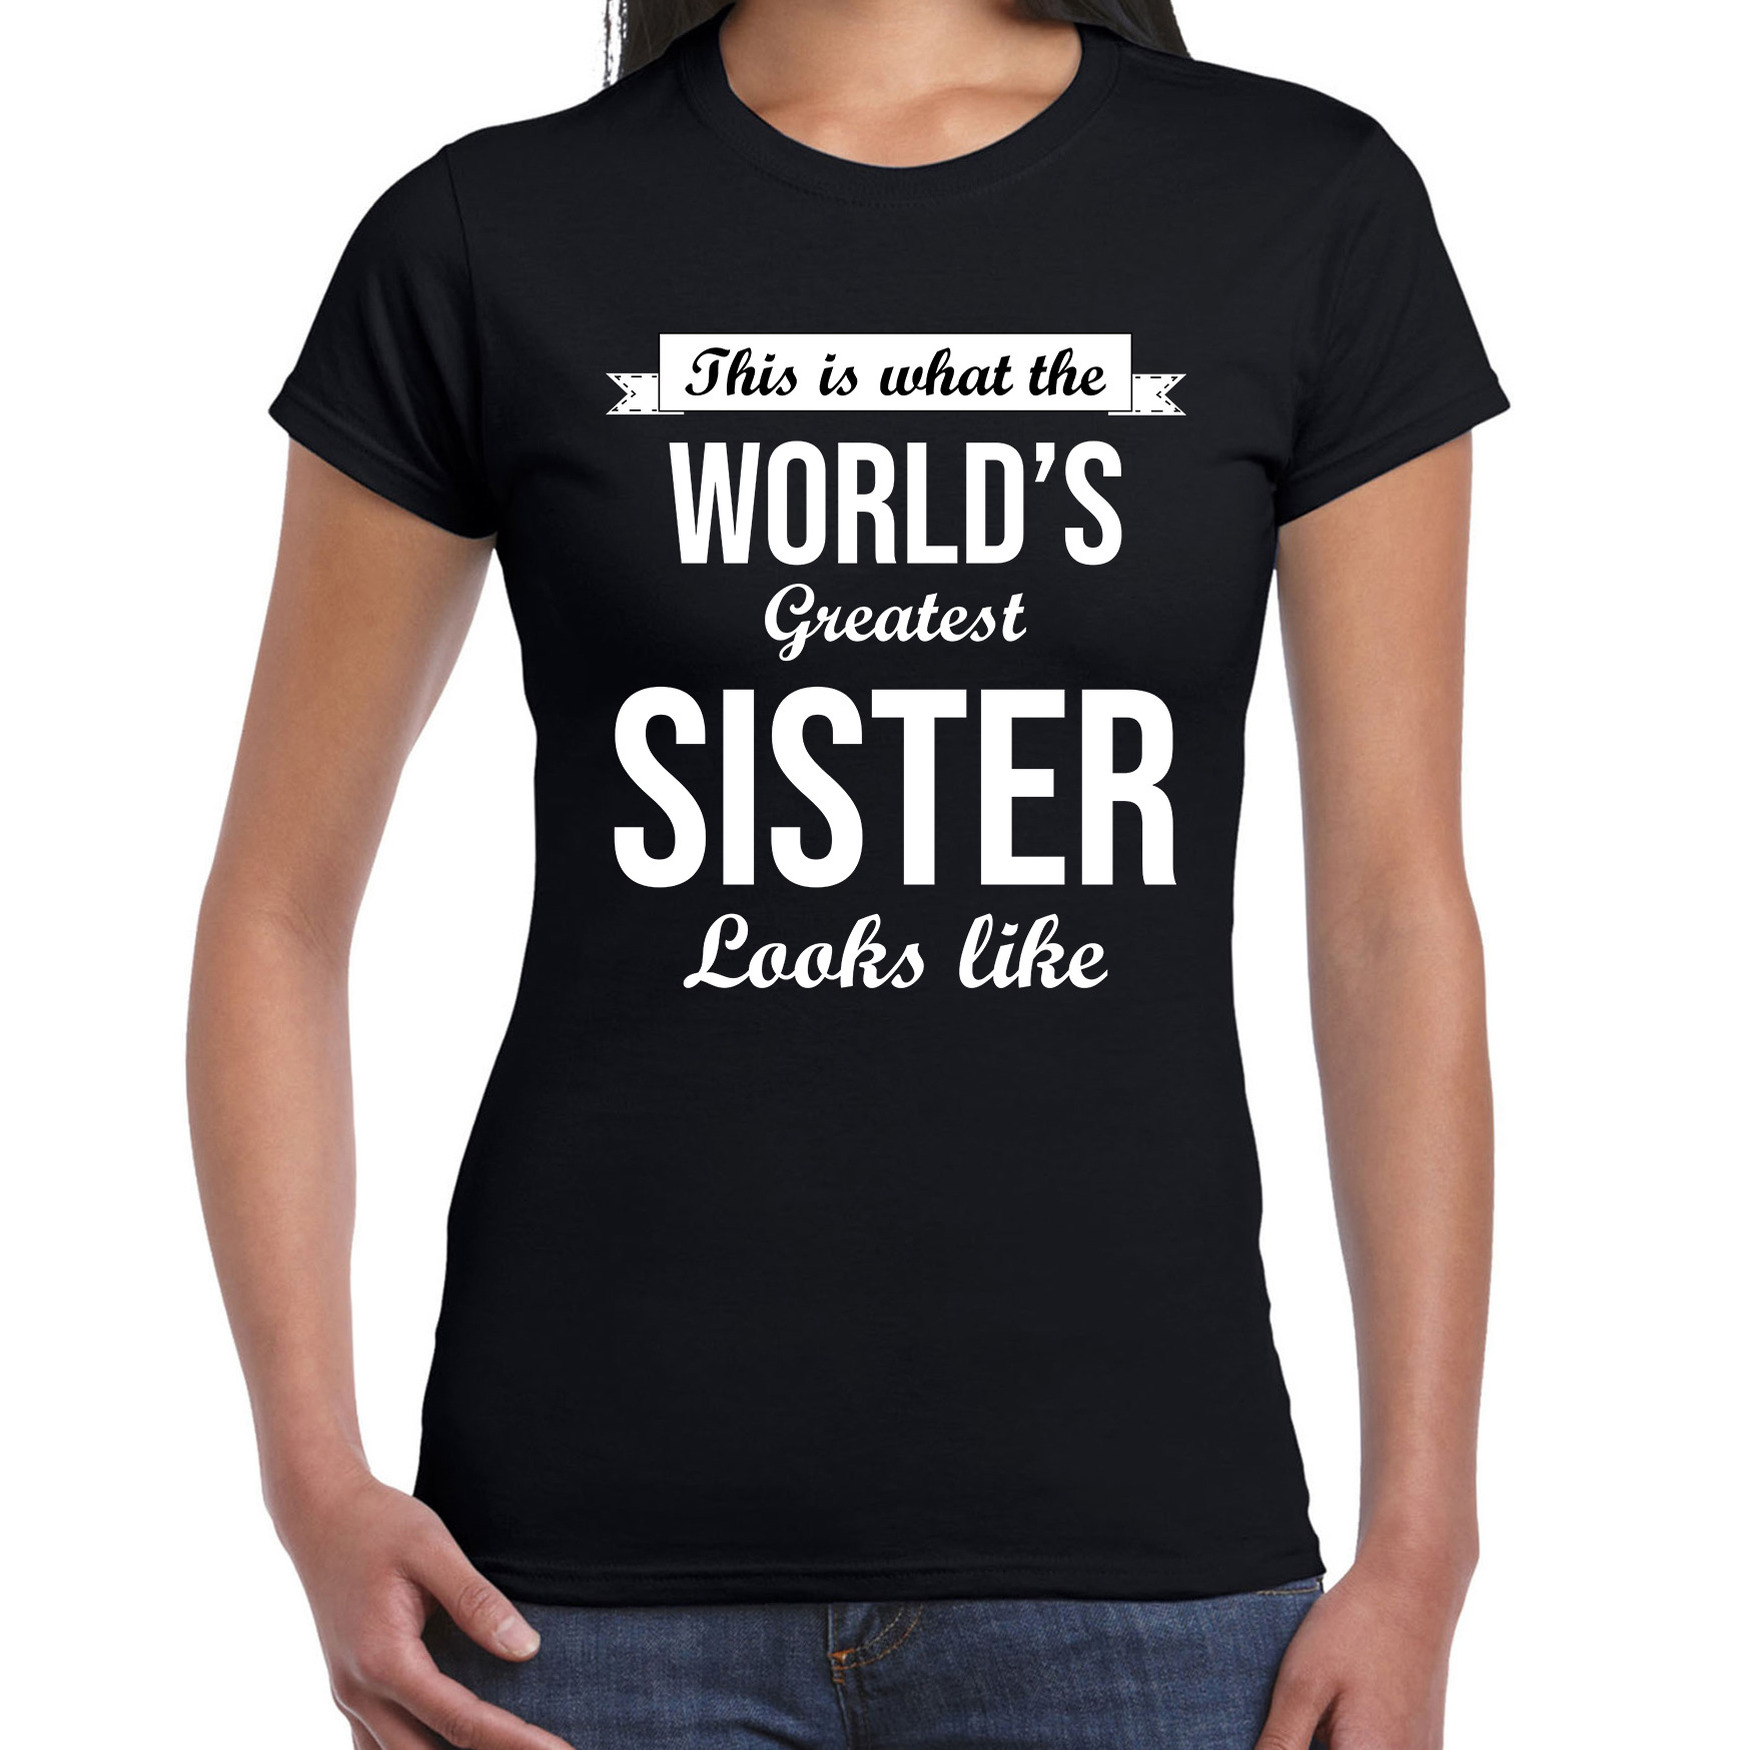 Worlds greatest sister cadeau t shirt zwart voor dames verjaardag kado shirt voor zusjes zussen